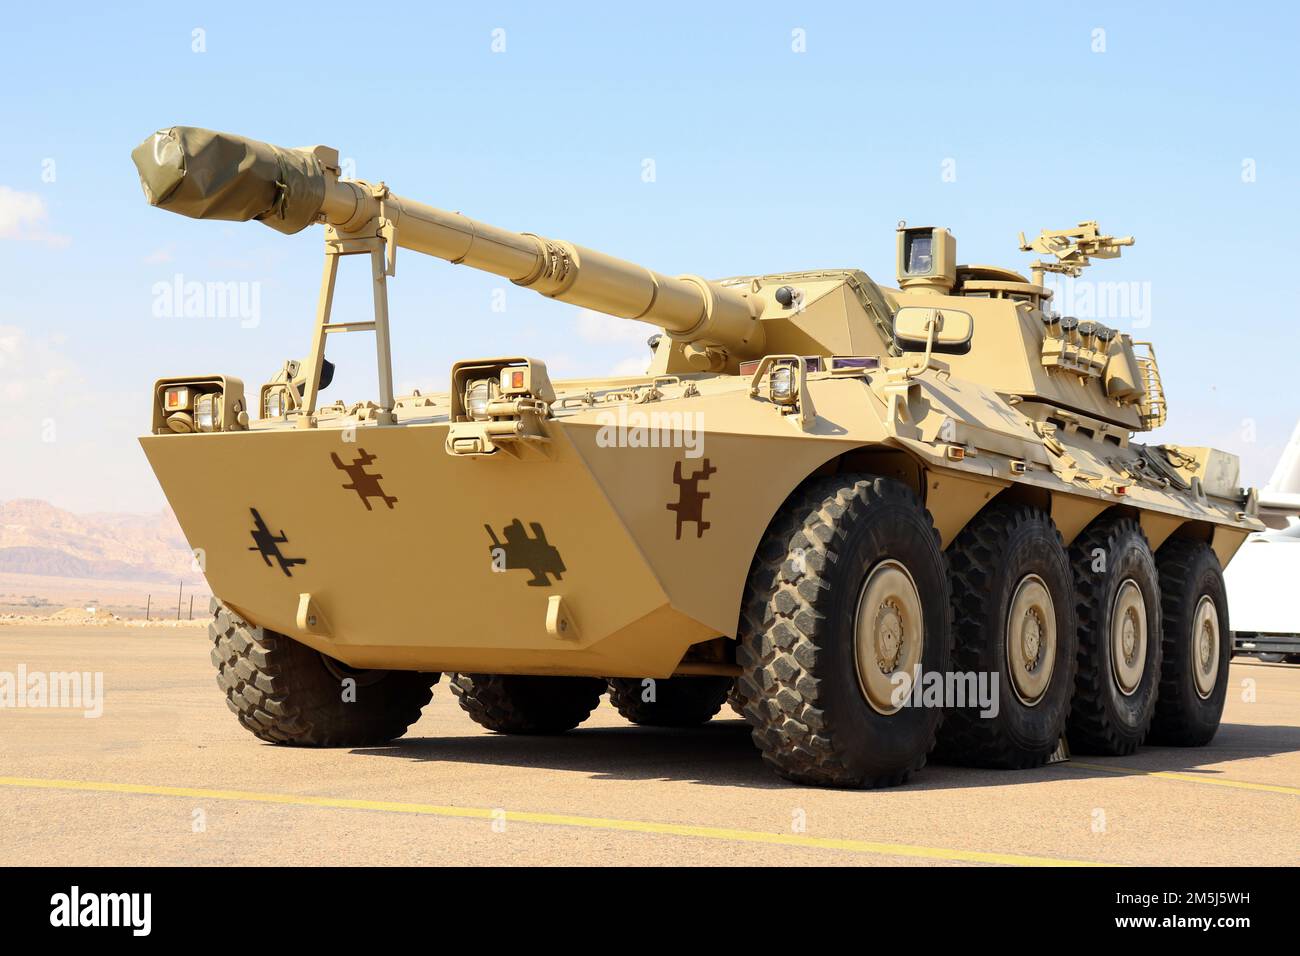 Le Centauro est une famille de véhicules militaires italiens provenant d'un chasseur de chars à roues (Armée, Jordanie) jordanien blindé et militaire Banque D'Images